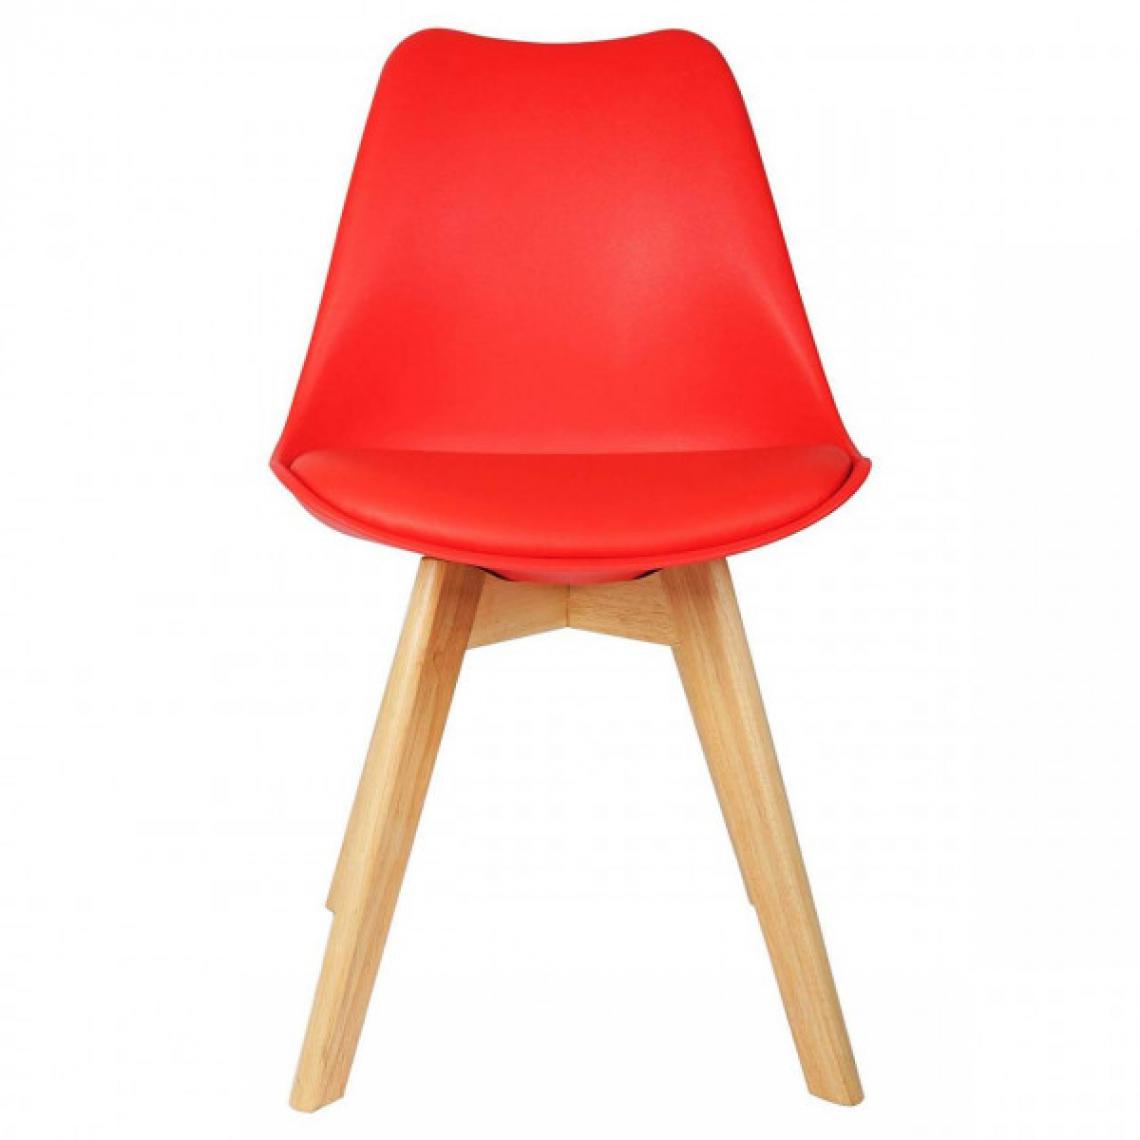 MercatoXL - Salle à manger cuir artificiel chaise jambes en bois rouge - Tables à manger